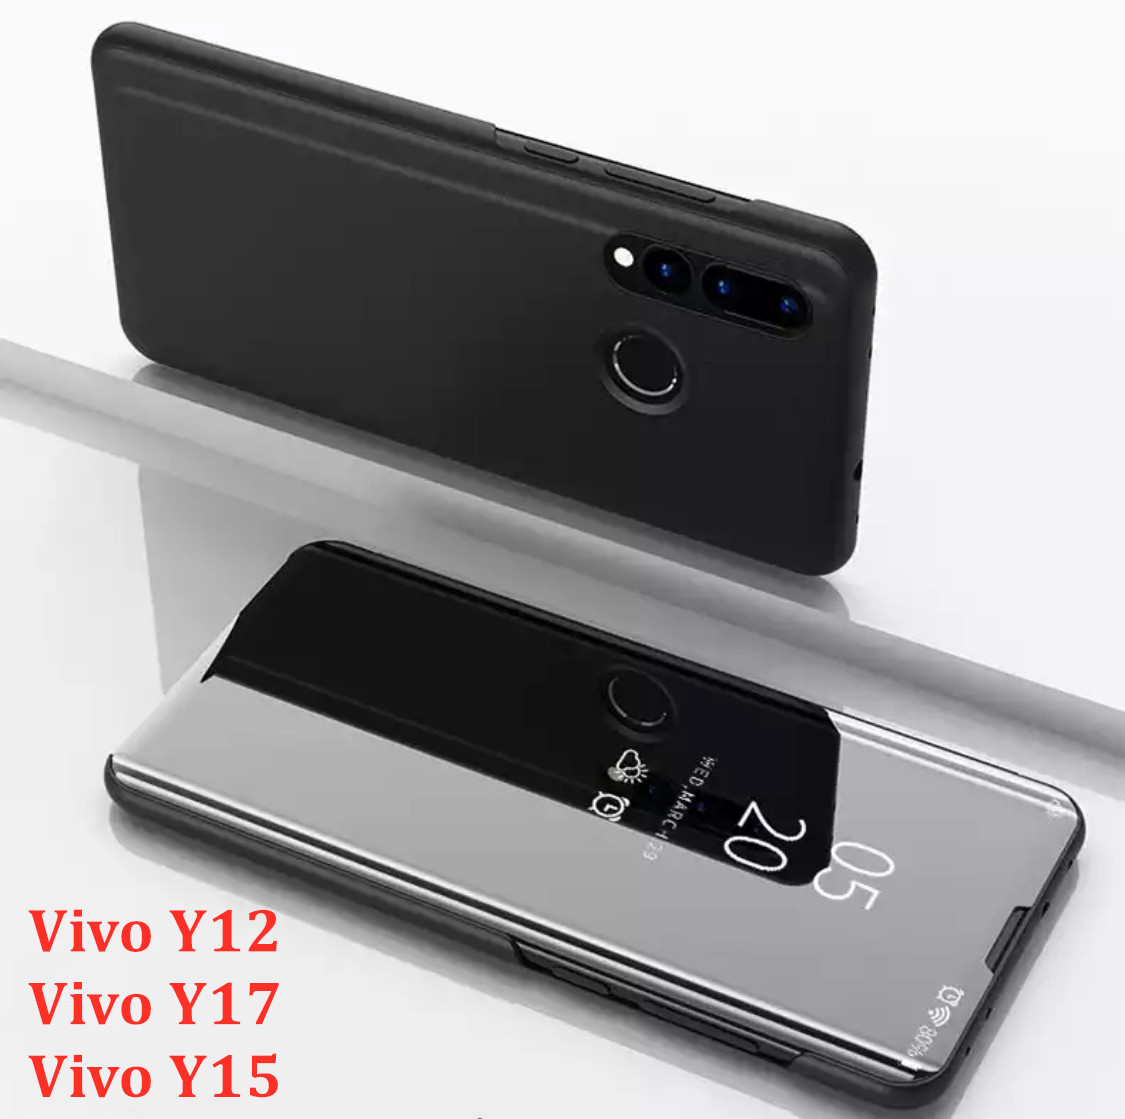 [ส่งจากไทย] Case Vivo Y17 เคสเปิดปิดเงา สำหรับรุ่น Vivo Y17 ฝาพับ กระเป๋า vivo วาย17 Smart Case เคสวีโว่ Y17 เคสฝาเปิดปิดเงา สมาร์ทเคส เคสตั้งได้ Vivo Y17 Flip Mirror Leather Case With Stand Holder เคสมือถือ เคสโทรศัพท์ รับประกันความพอใจ สี ดำ